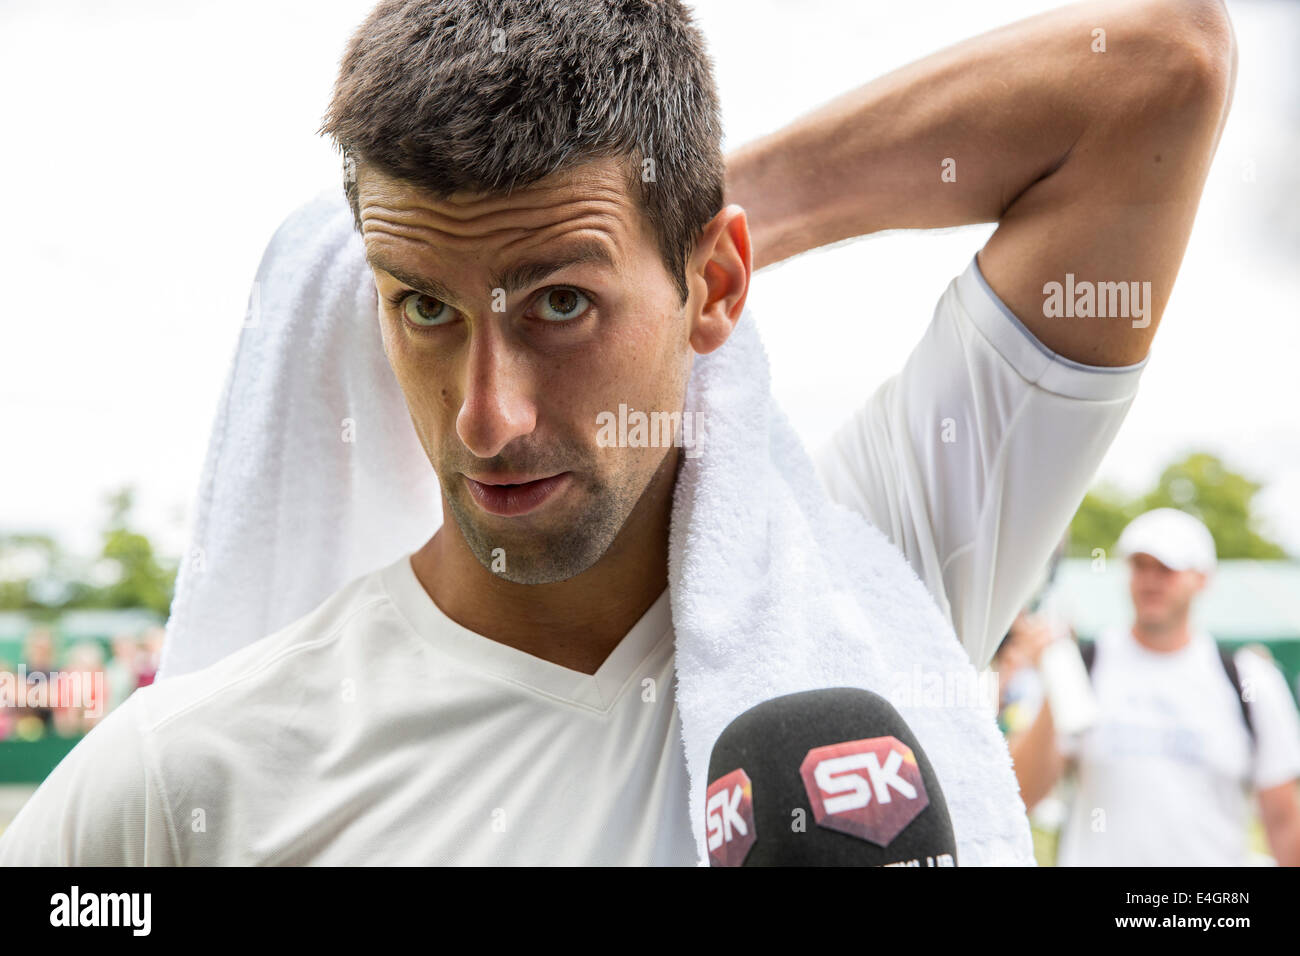 Novak Djokovic prácticas en el Tribunal nº4 de los campeonatos de Wimbledon en 2014, el All England Lawn Tennis & Crocquet Club Wimbledon Foto de stock